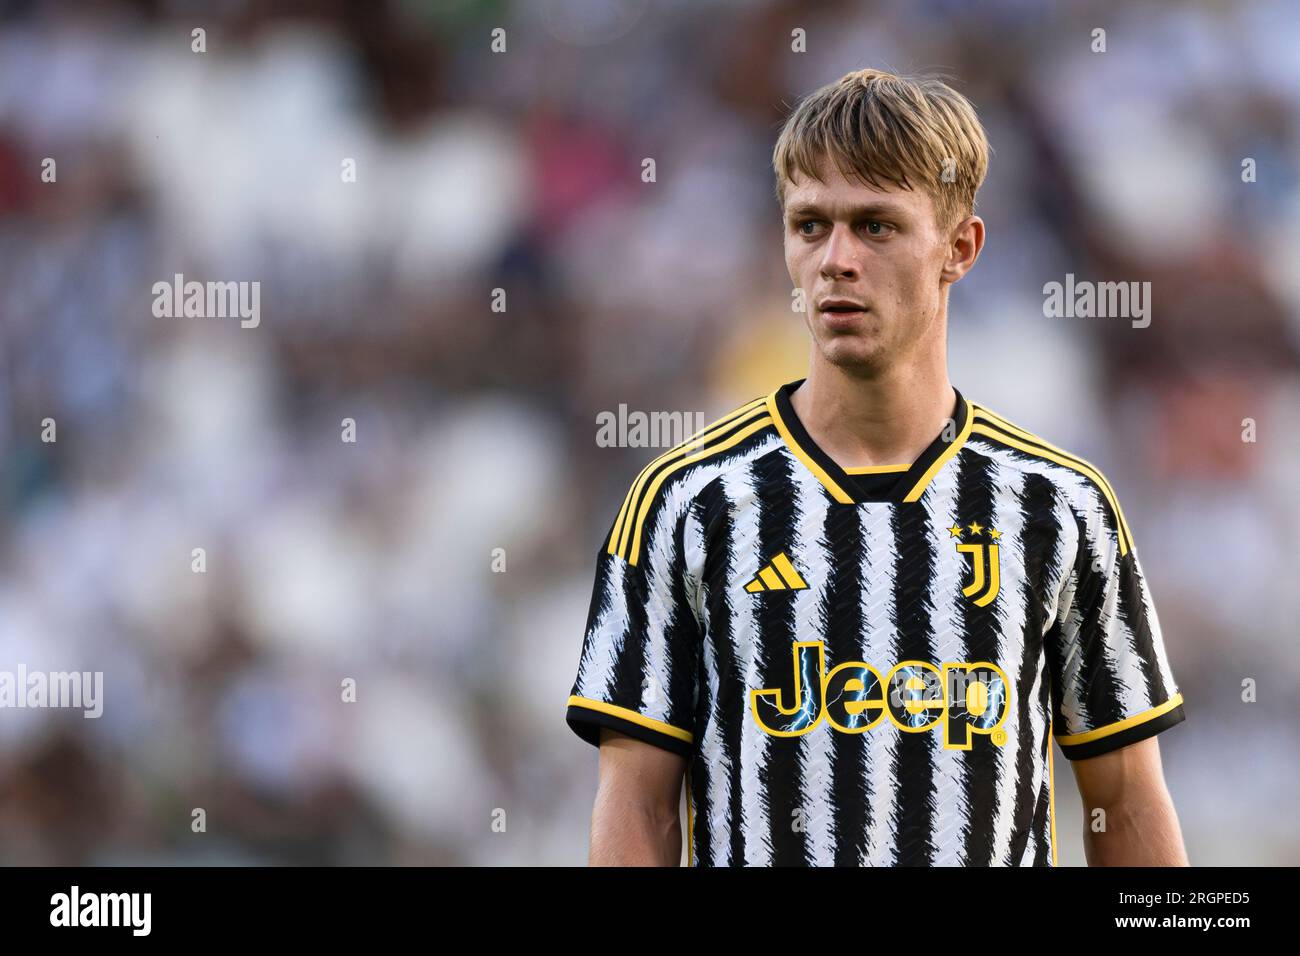 Hans Nicolussi Caviglia of Juventus FC looks on during the